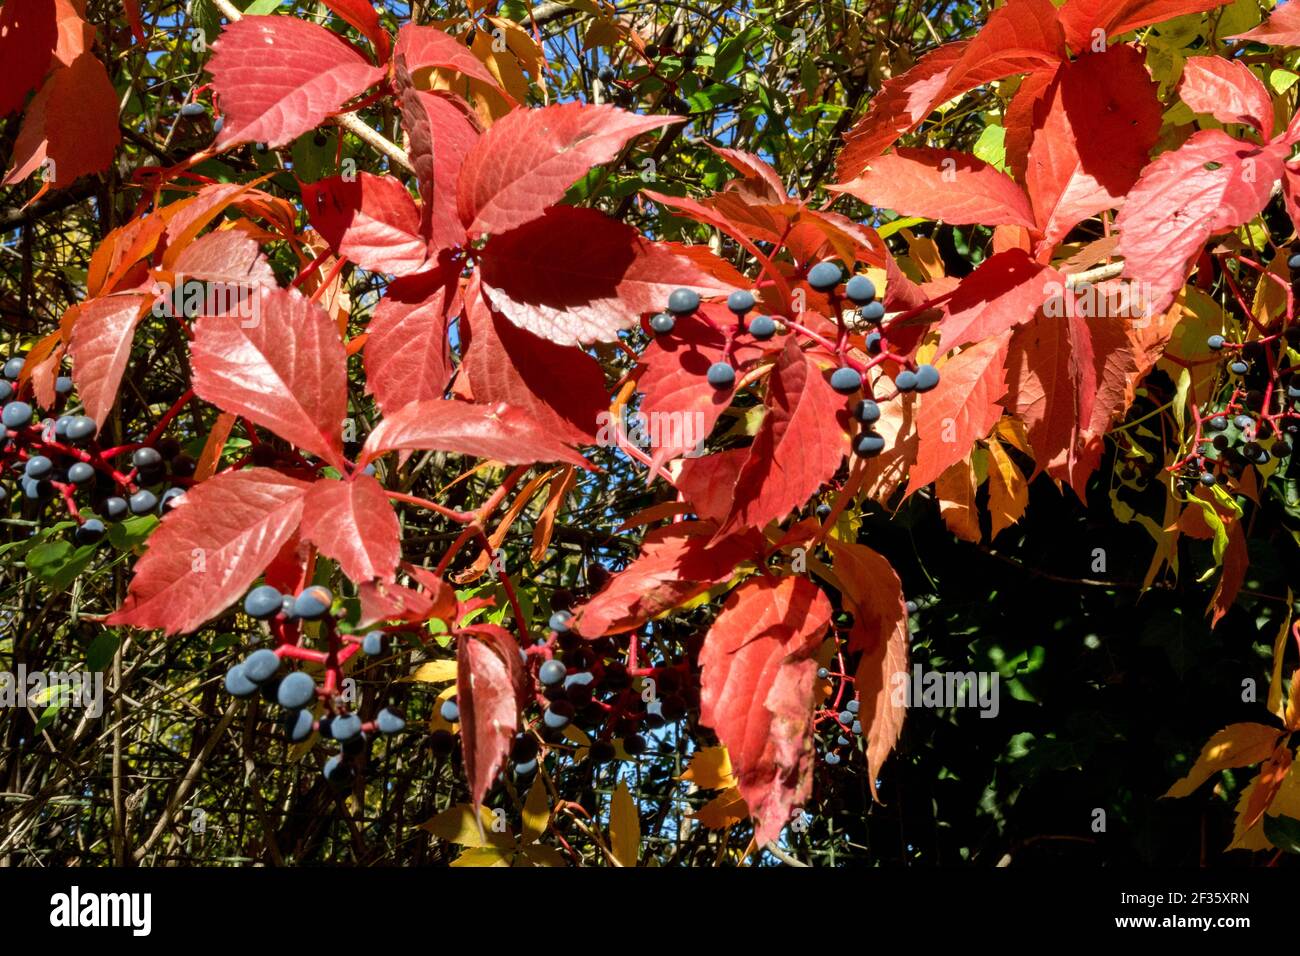 Virginia super-réducteur automne feuilles rouges et baies bleues Parthenocissus quinquefolia usine d'escalade Banque D'Images